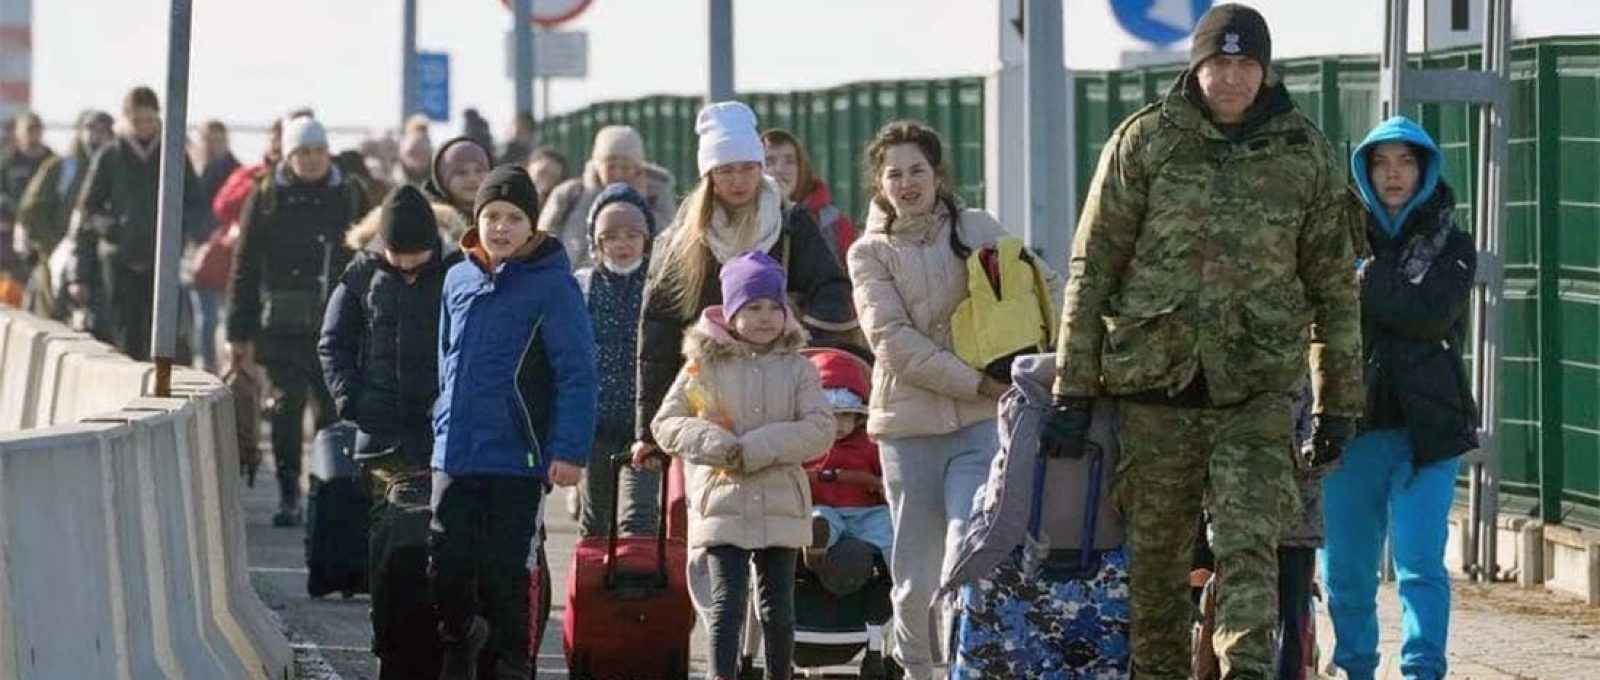 Refugiados ucranianos cruzando a fronteira com a Polônia (Czarek Sokalowski/AP/Ministério de Assuntos Internos da Ucrânia).